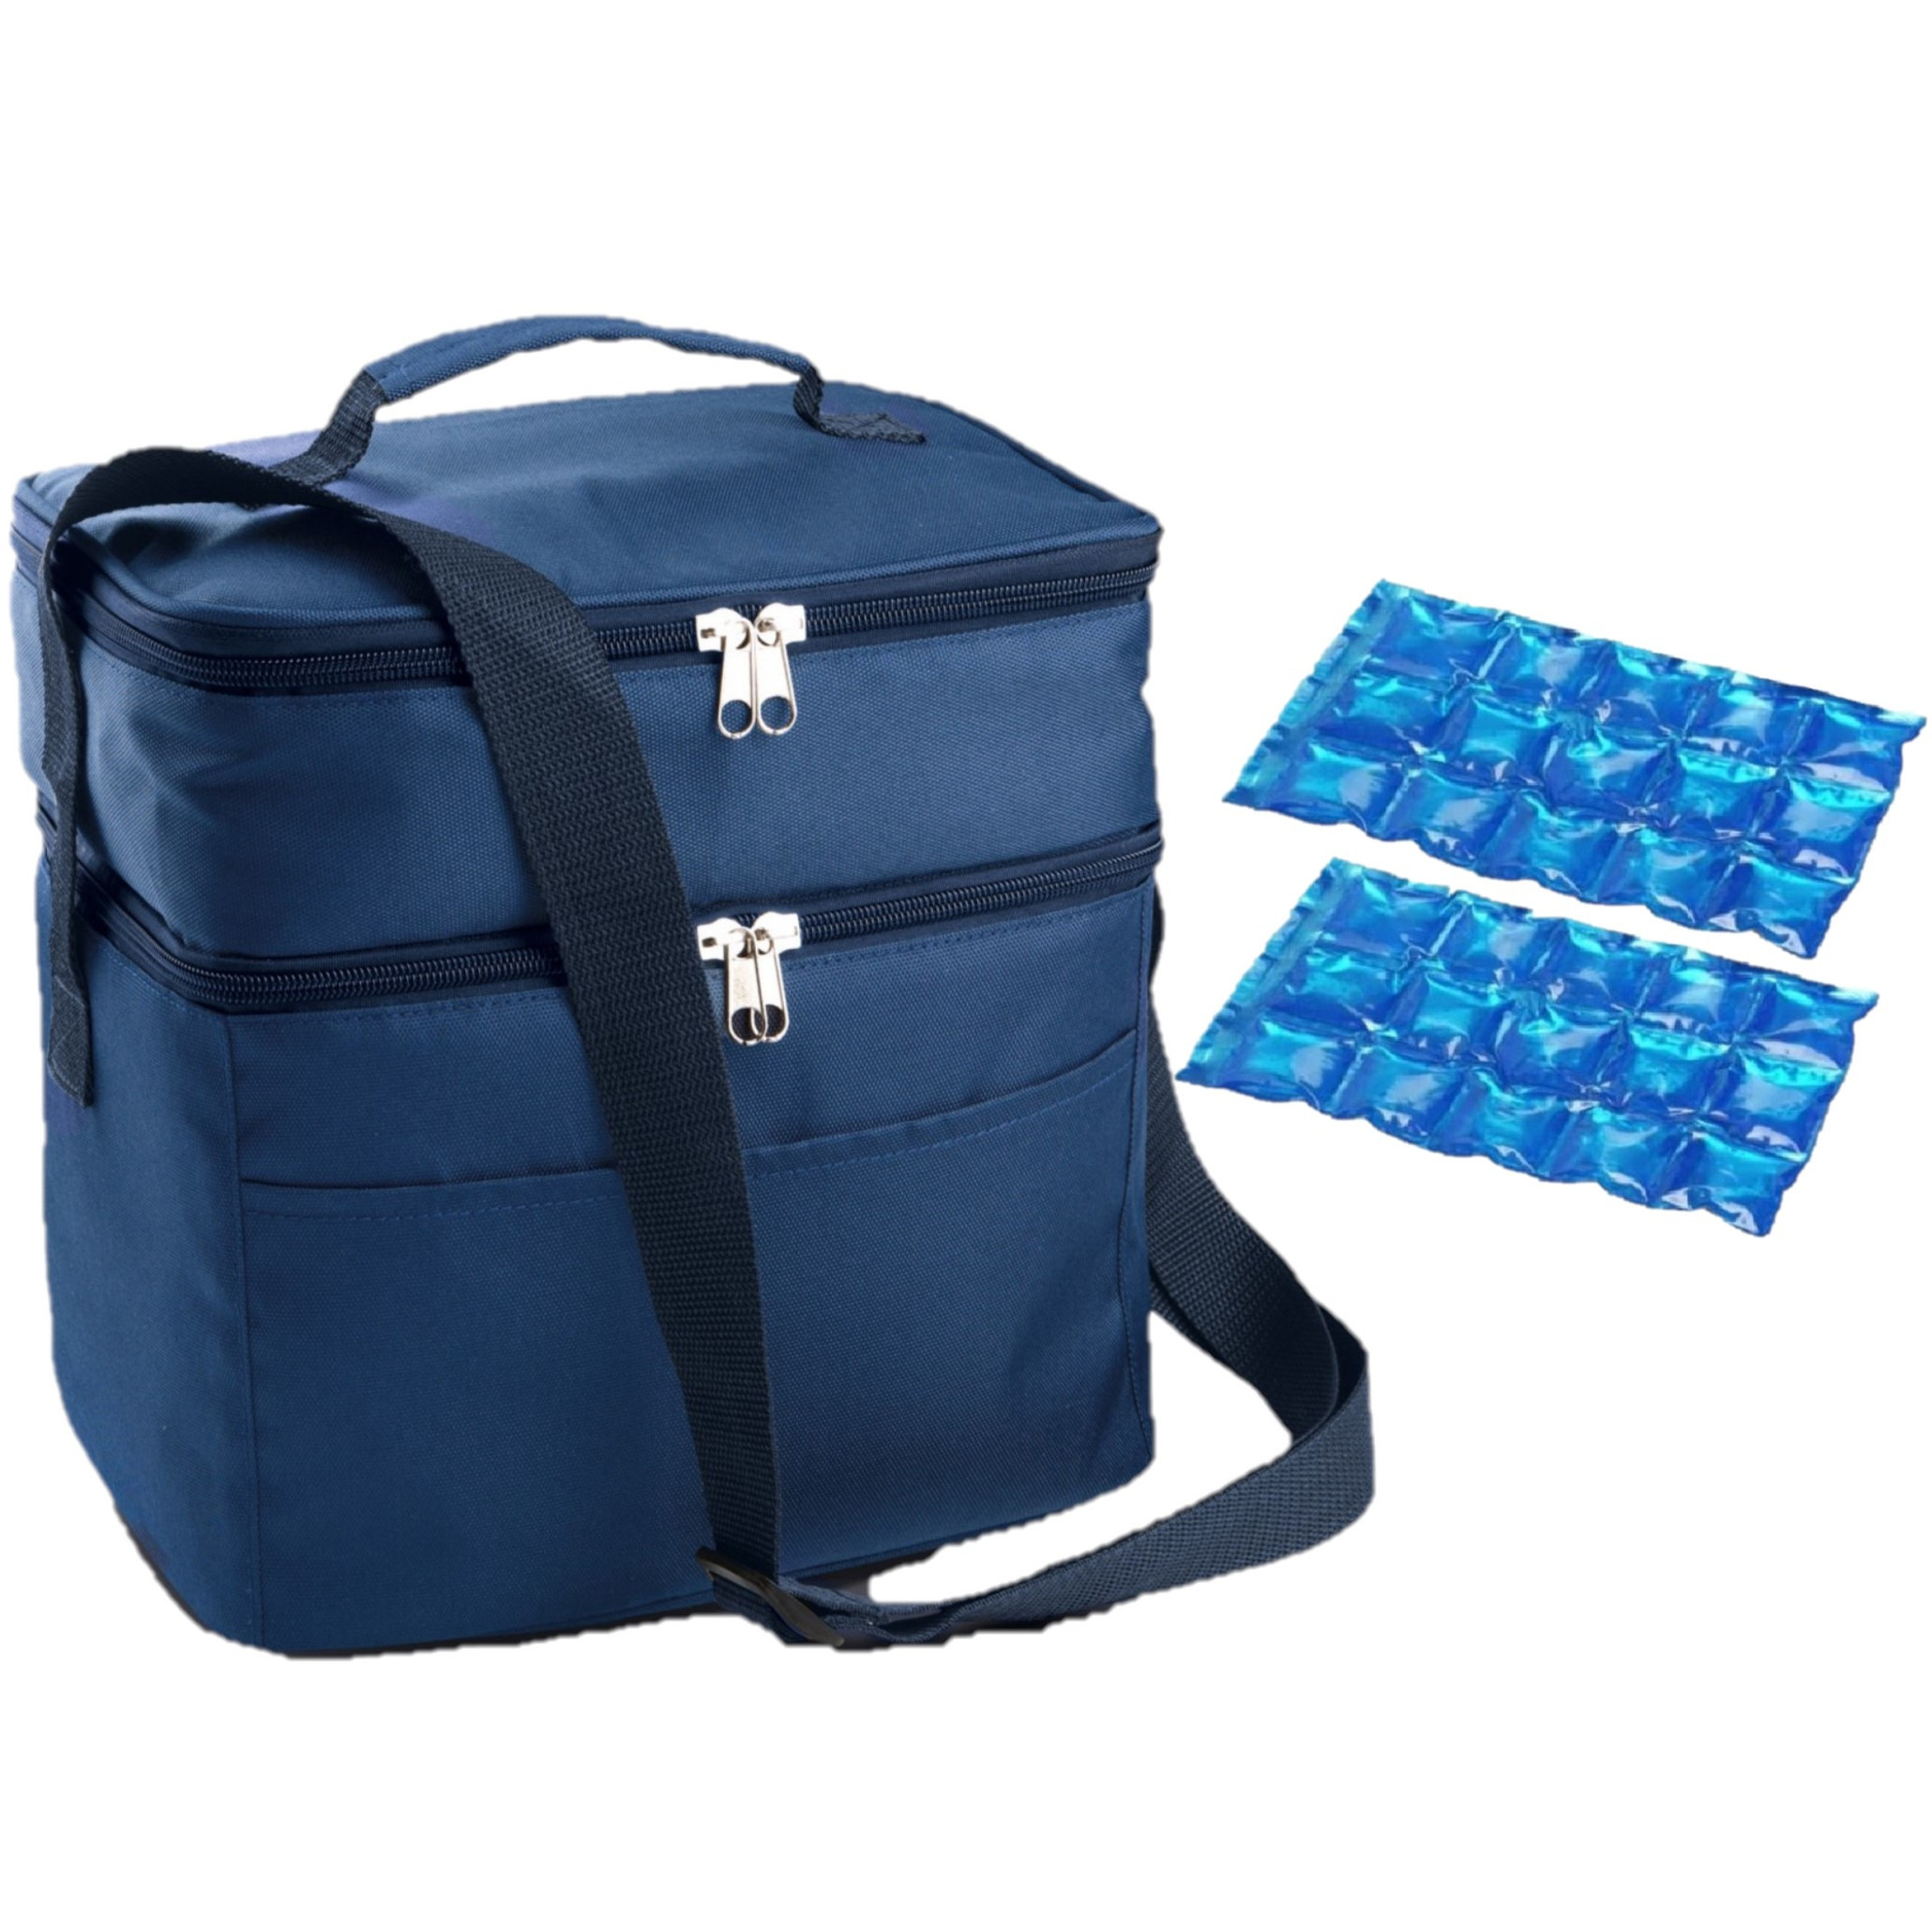 Koeltas draagtas schoudertas blauw met 2 stuks flexibele koelelementen 13 liter